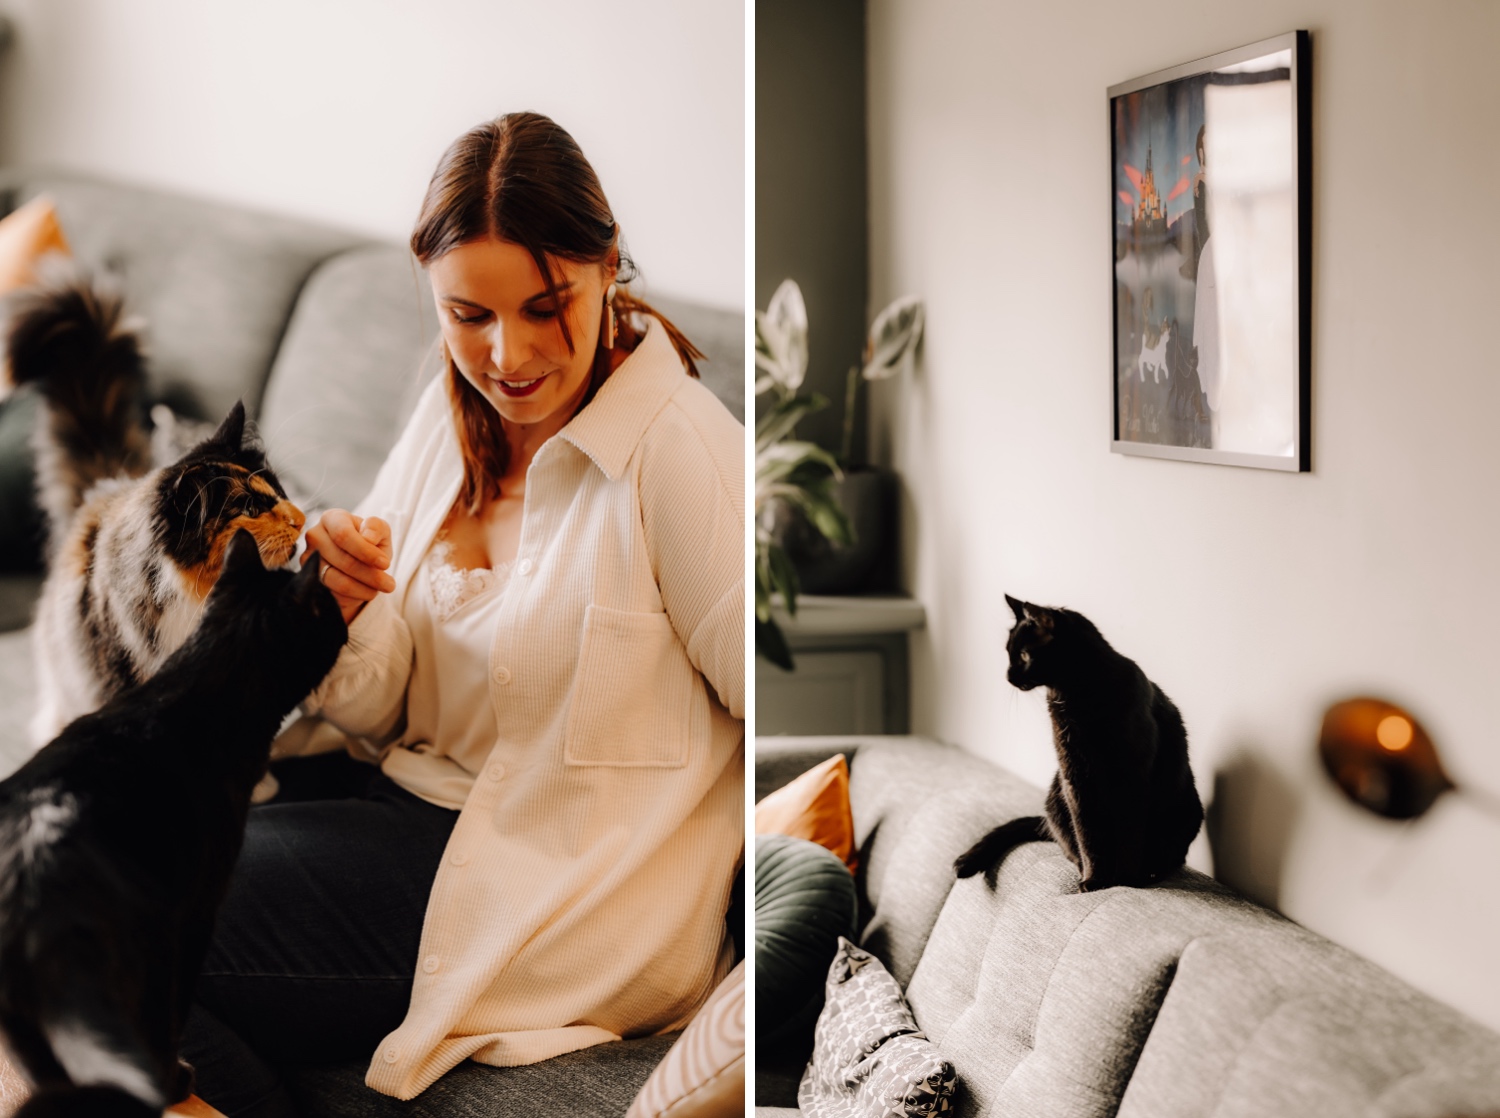 Gezinsfotograaf Limburg - huisdier fotosessies van een gezin met katten